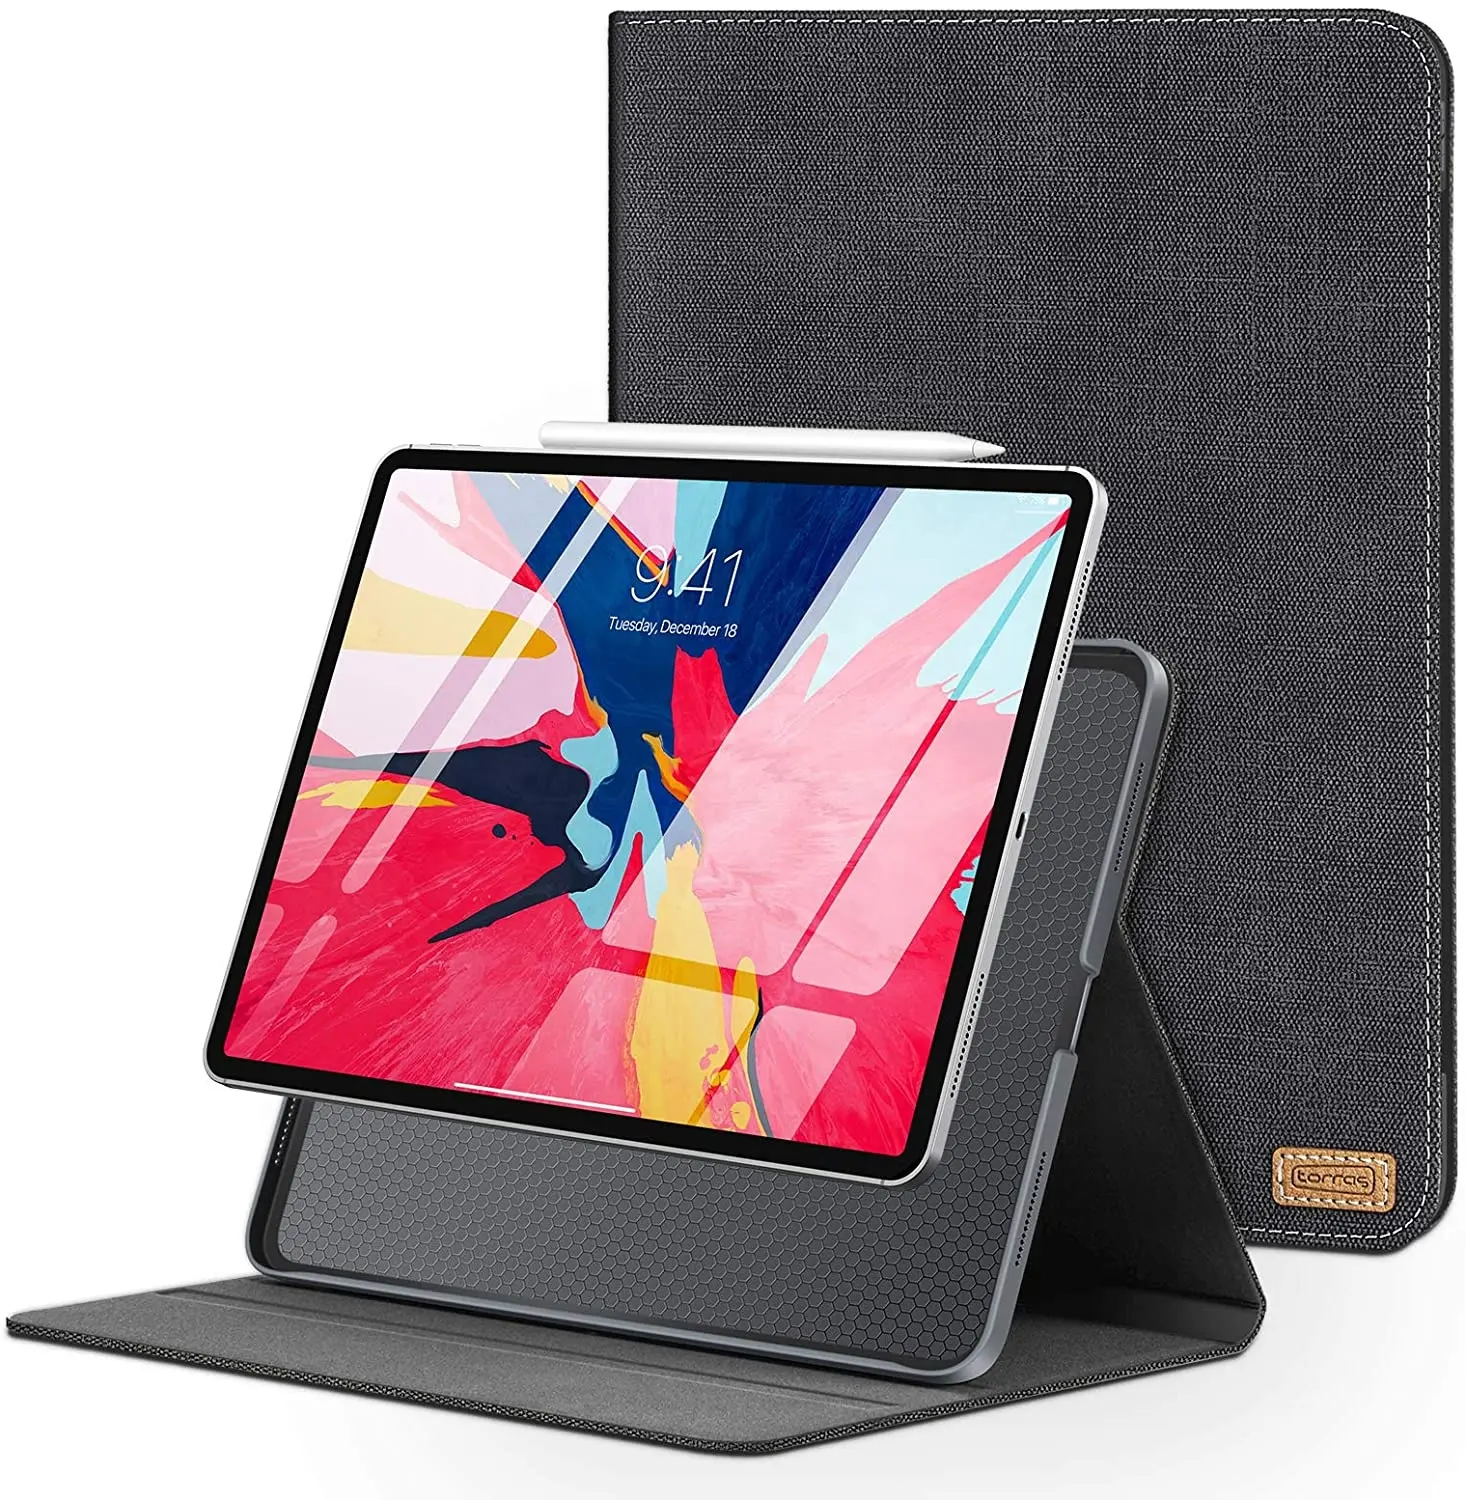 TORRAS iPad Pro 12.9 case Slim fit Flip Folio Leather iPad Pro Case for iPad Pro 3rd Generation Space Black